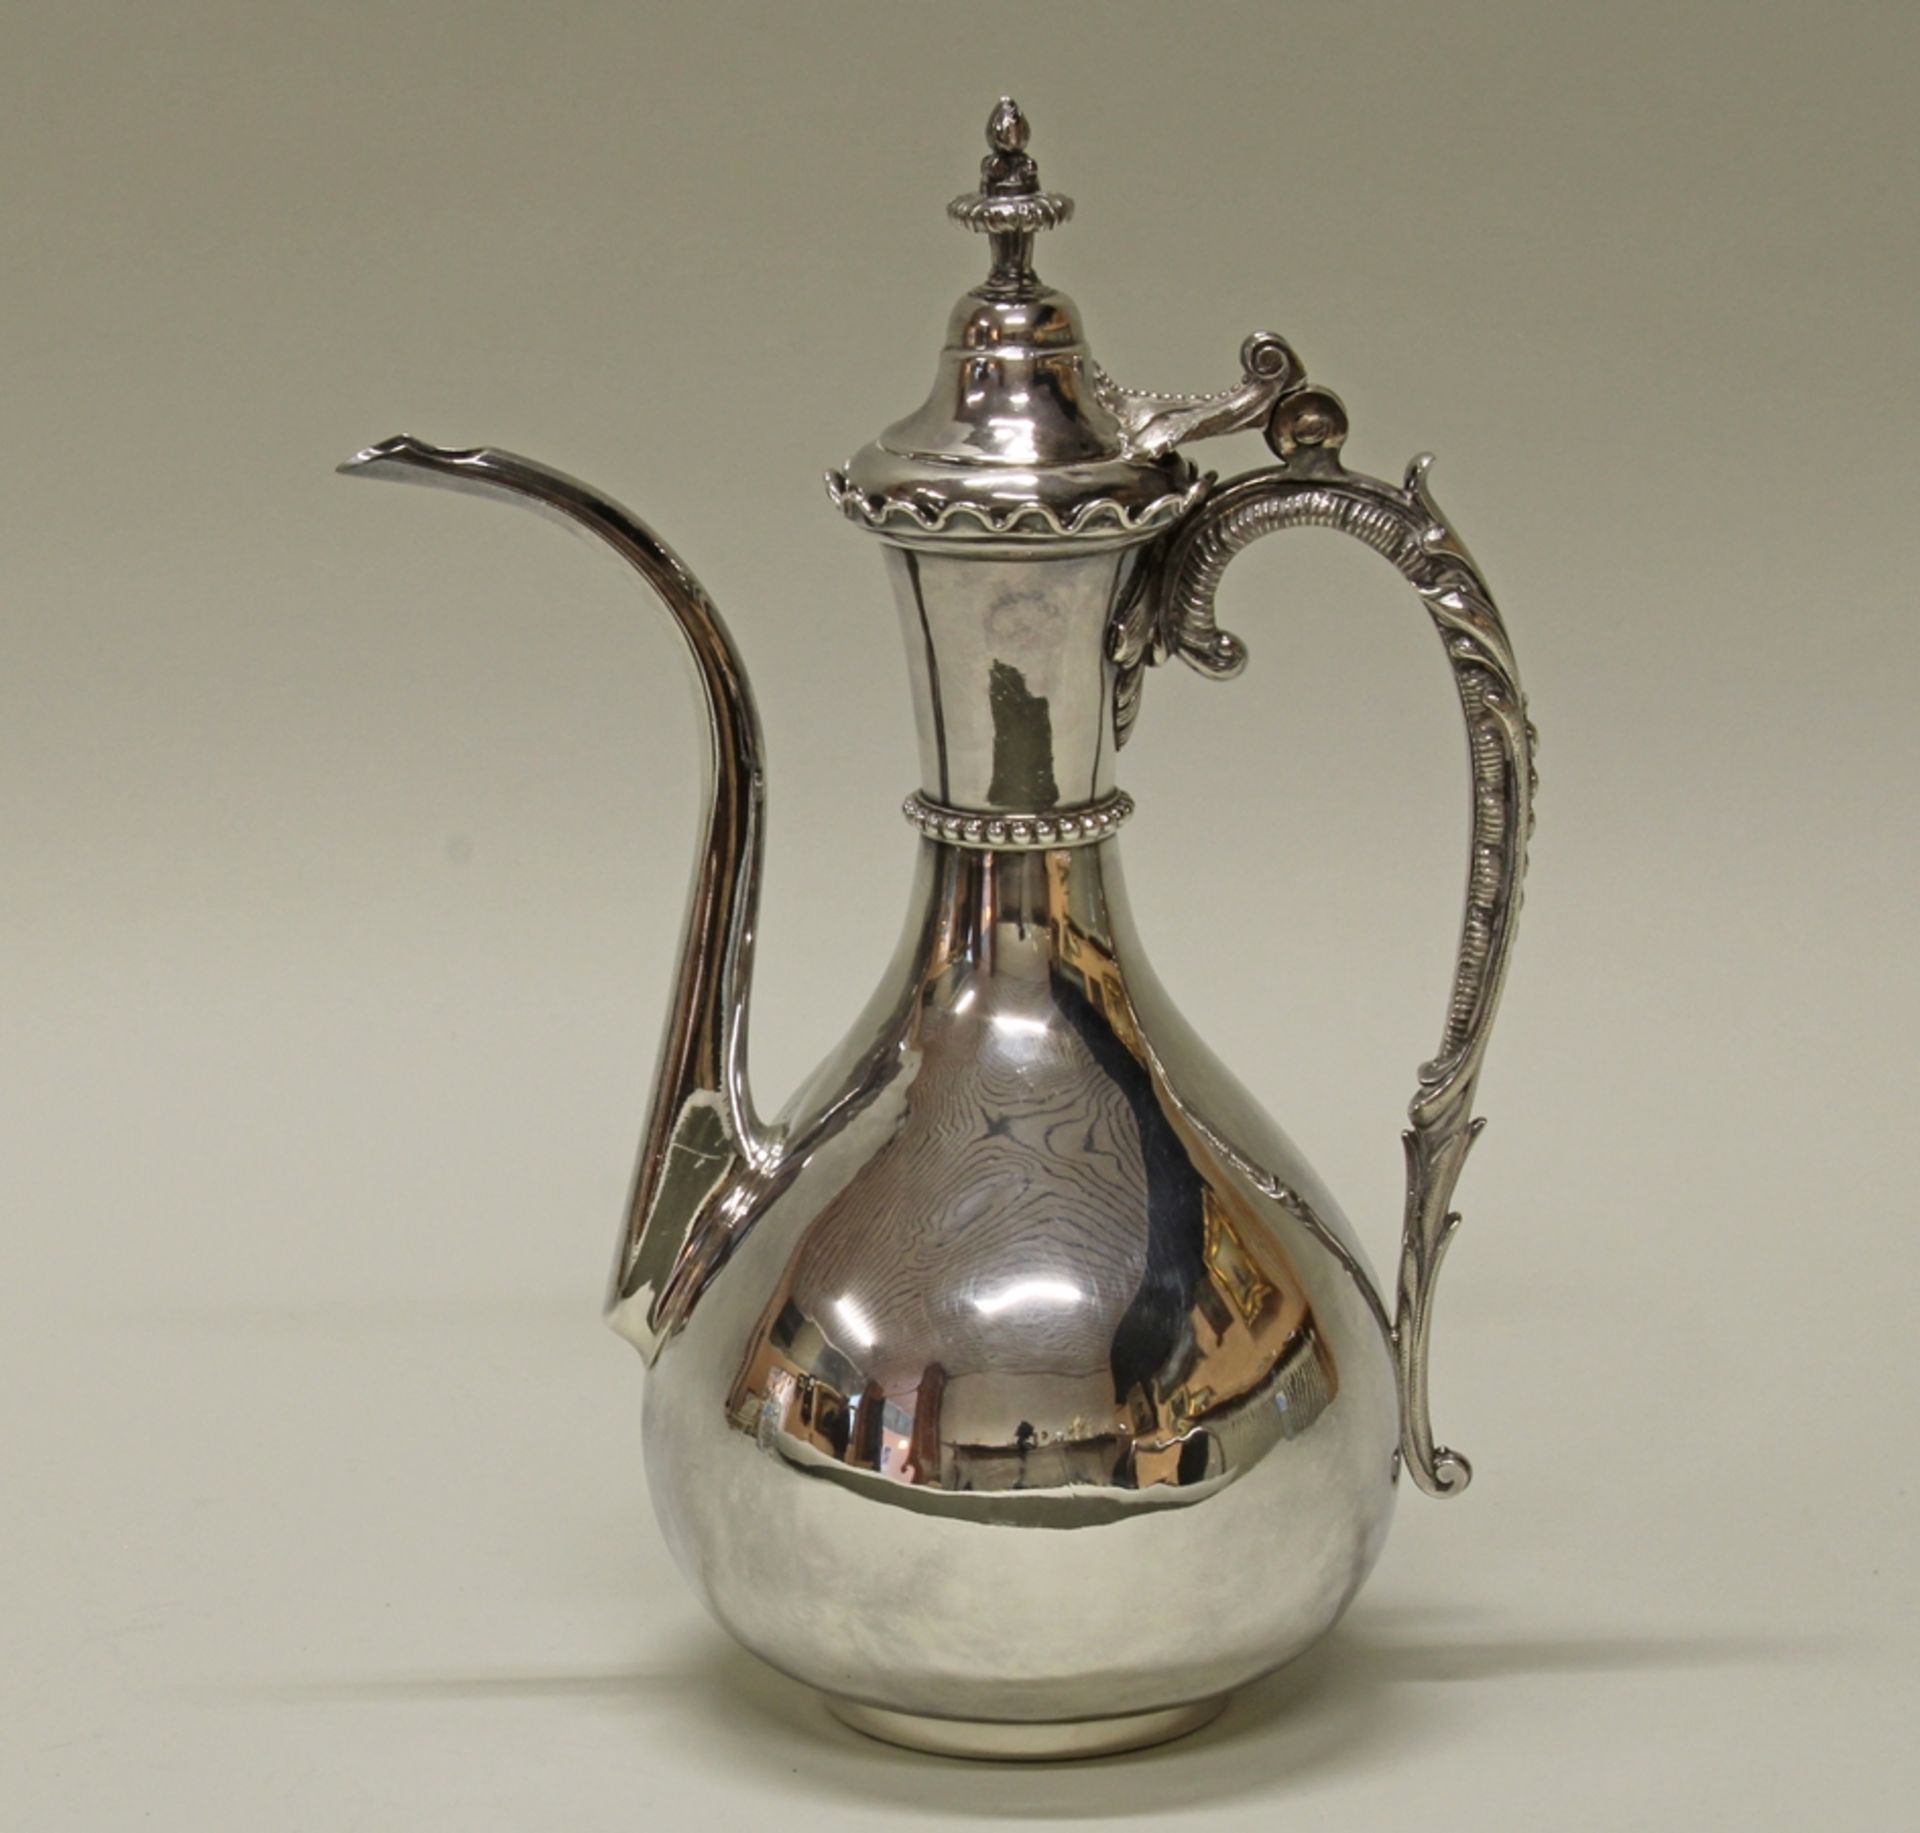 Kanne, Silber, Frankreich, 1840-1879, Exportmarke, Meistermarke PQ, orientalische Form, 31.5 cm hoc